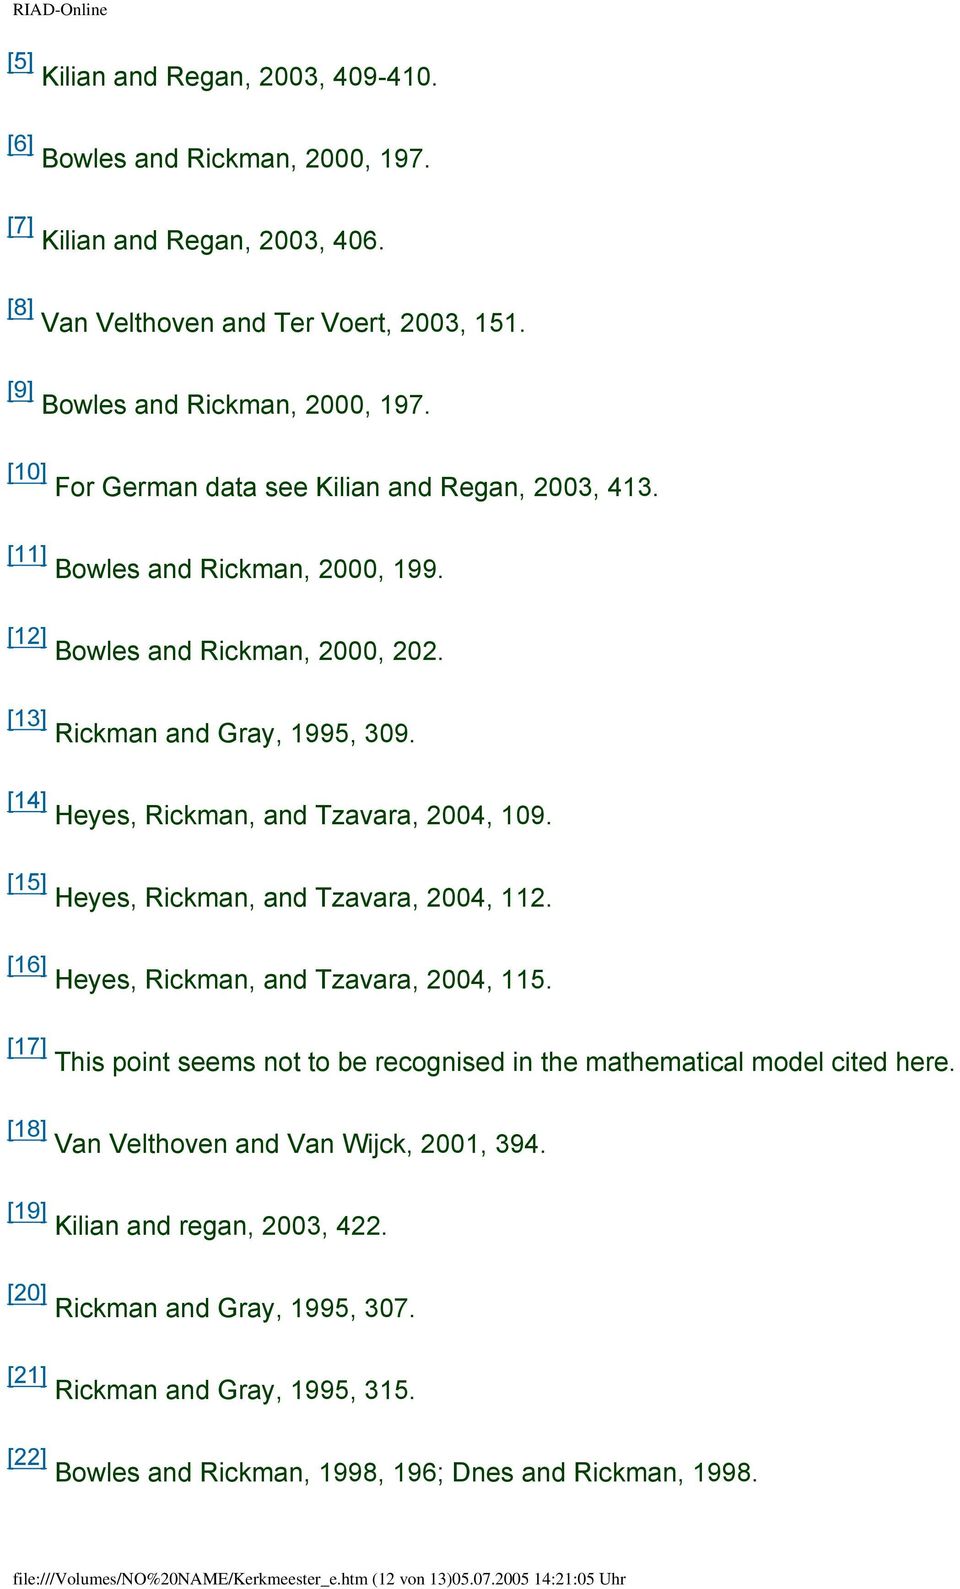 [14] Heyes, Rickman, and Tzavara, 2004, 109. [15] Heyes, Rickman, and Tzavara, 2004, 112. [16] Heyes, Rickman, and Tzavara, 2004, 115.